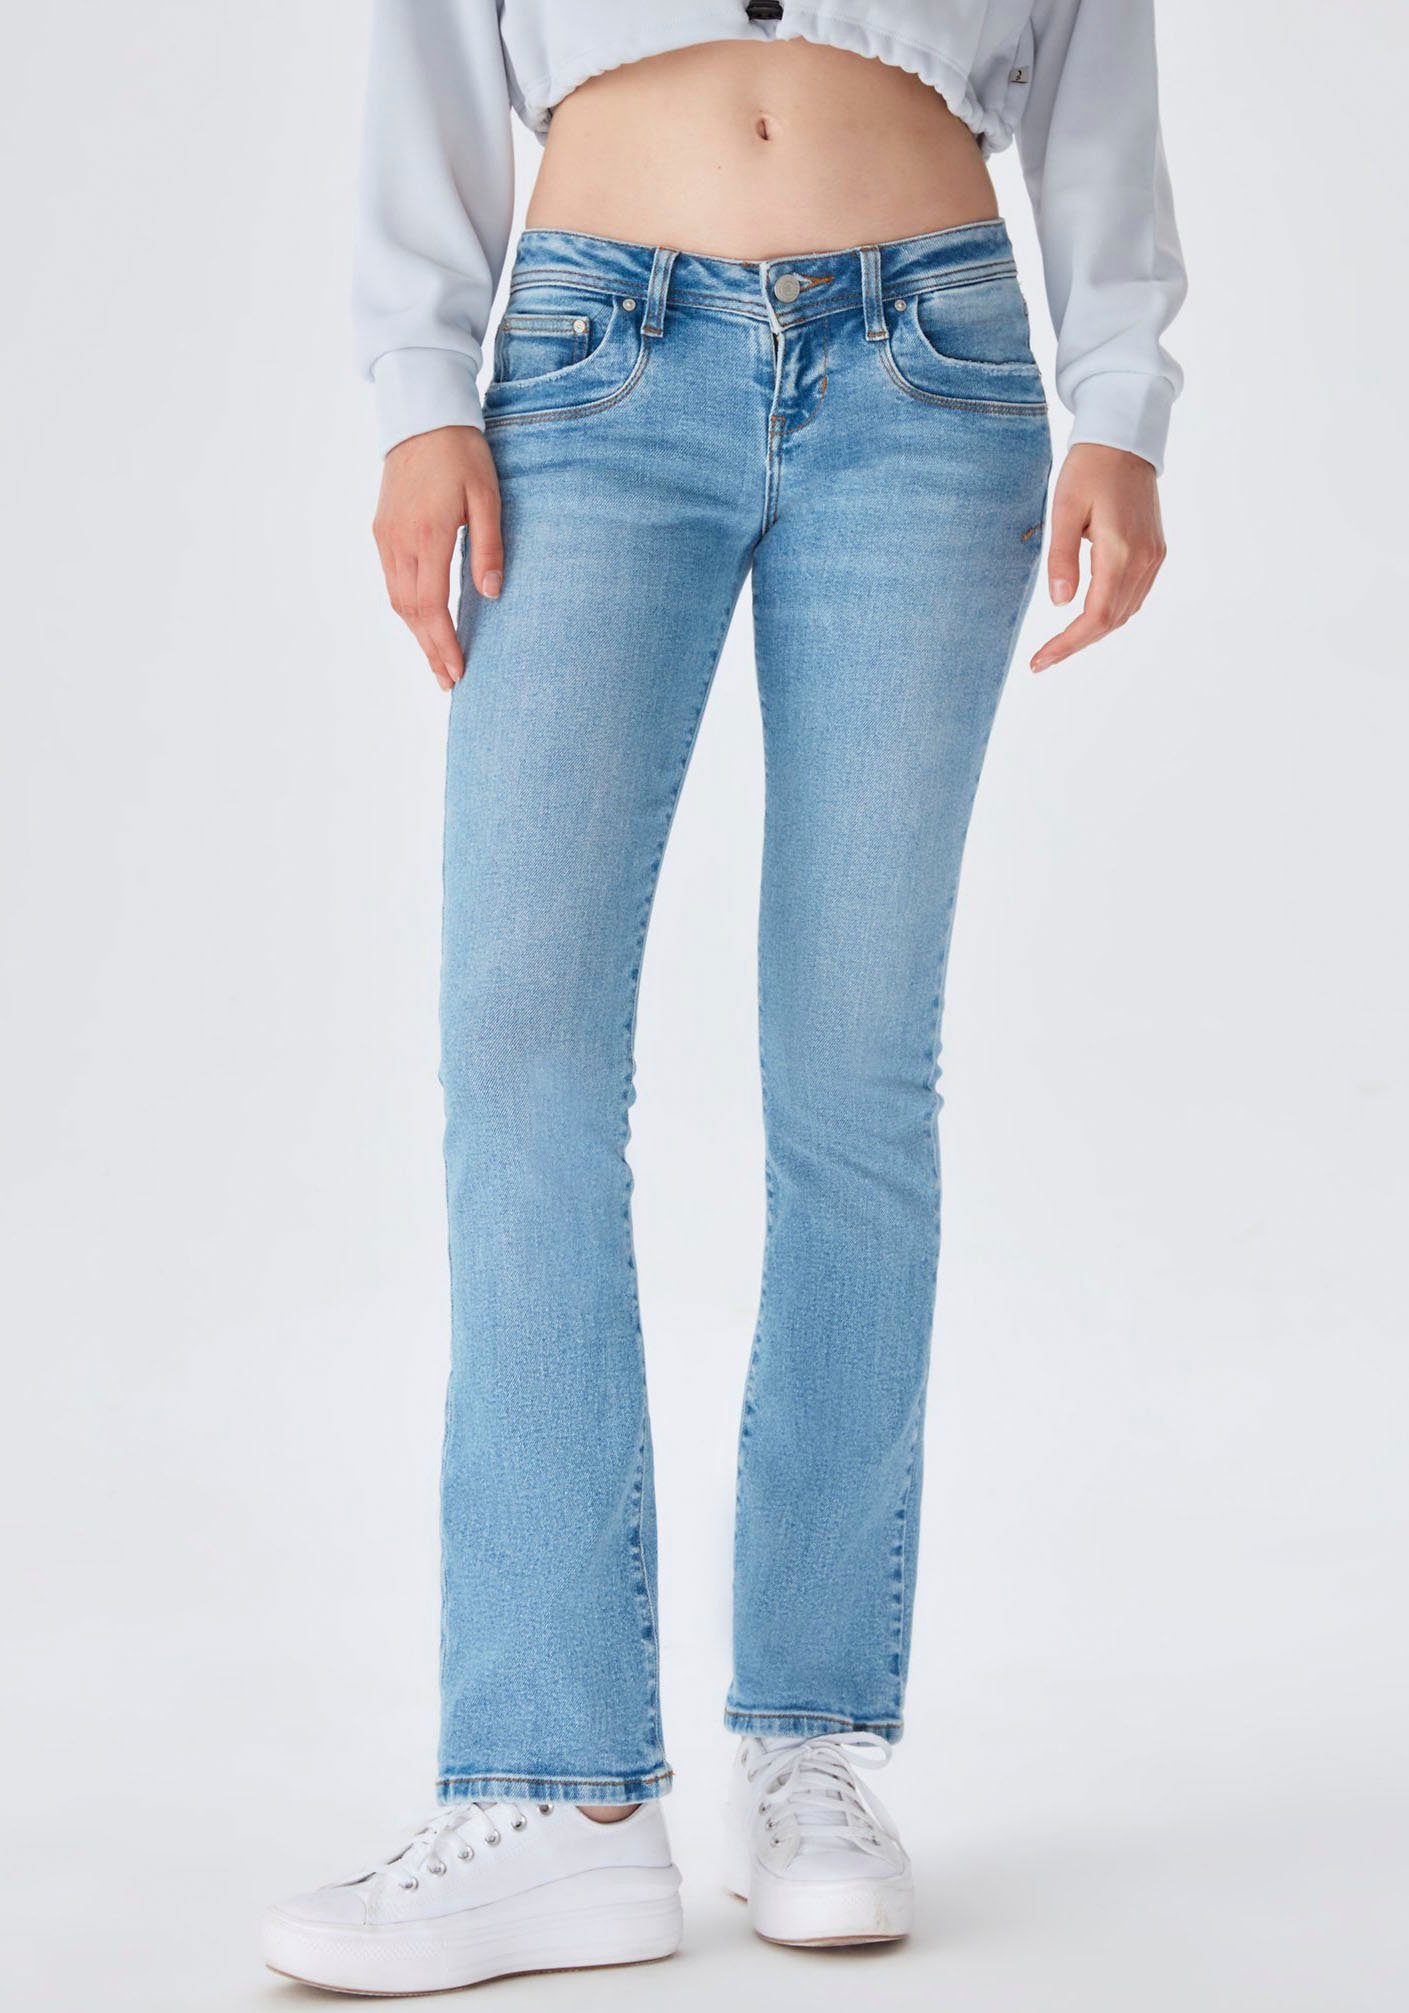 Jeans online kopen Bekijk de collectie | OTTO